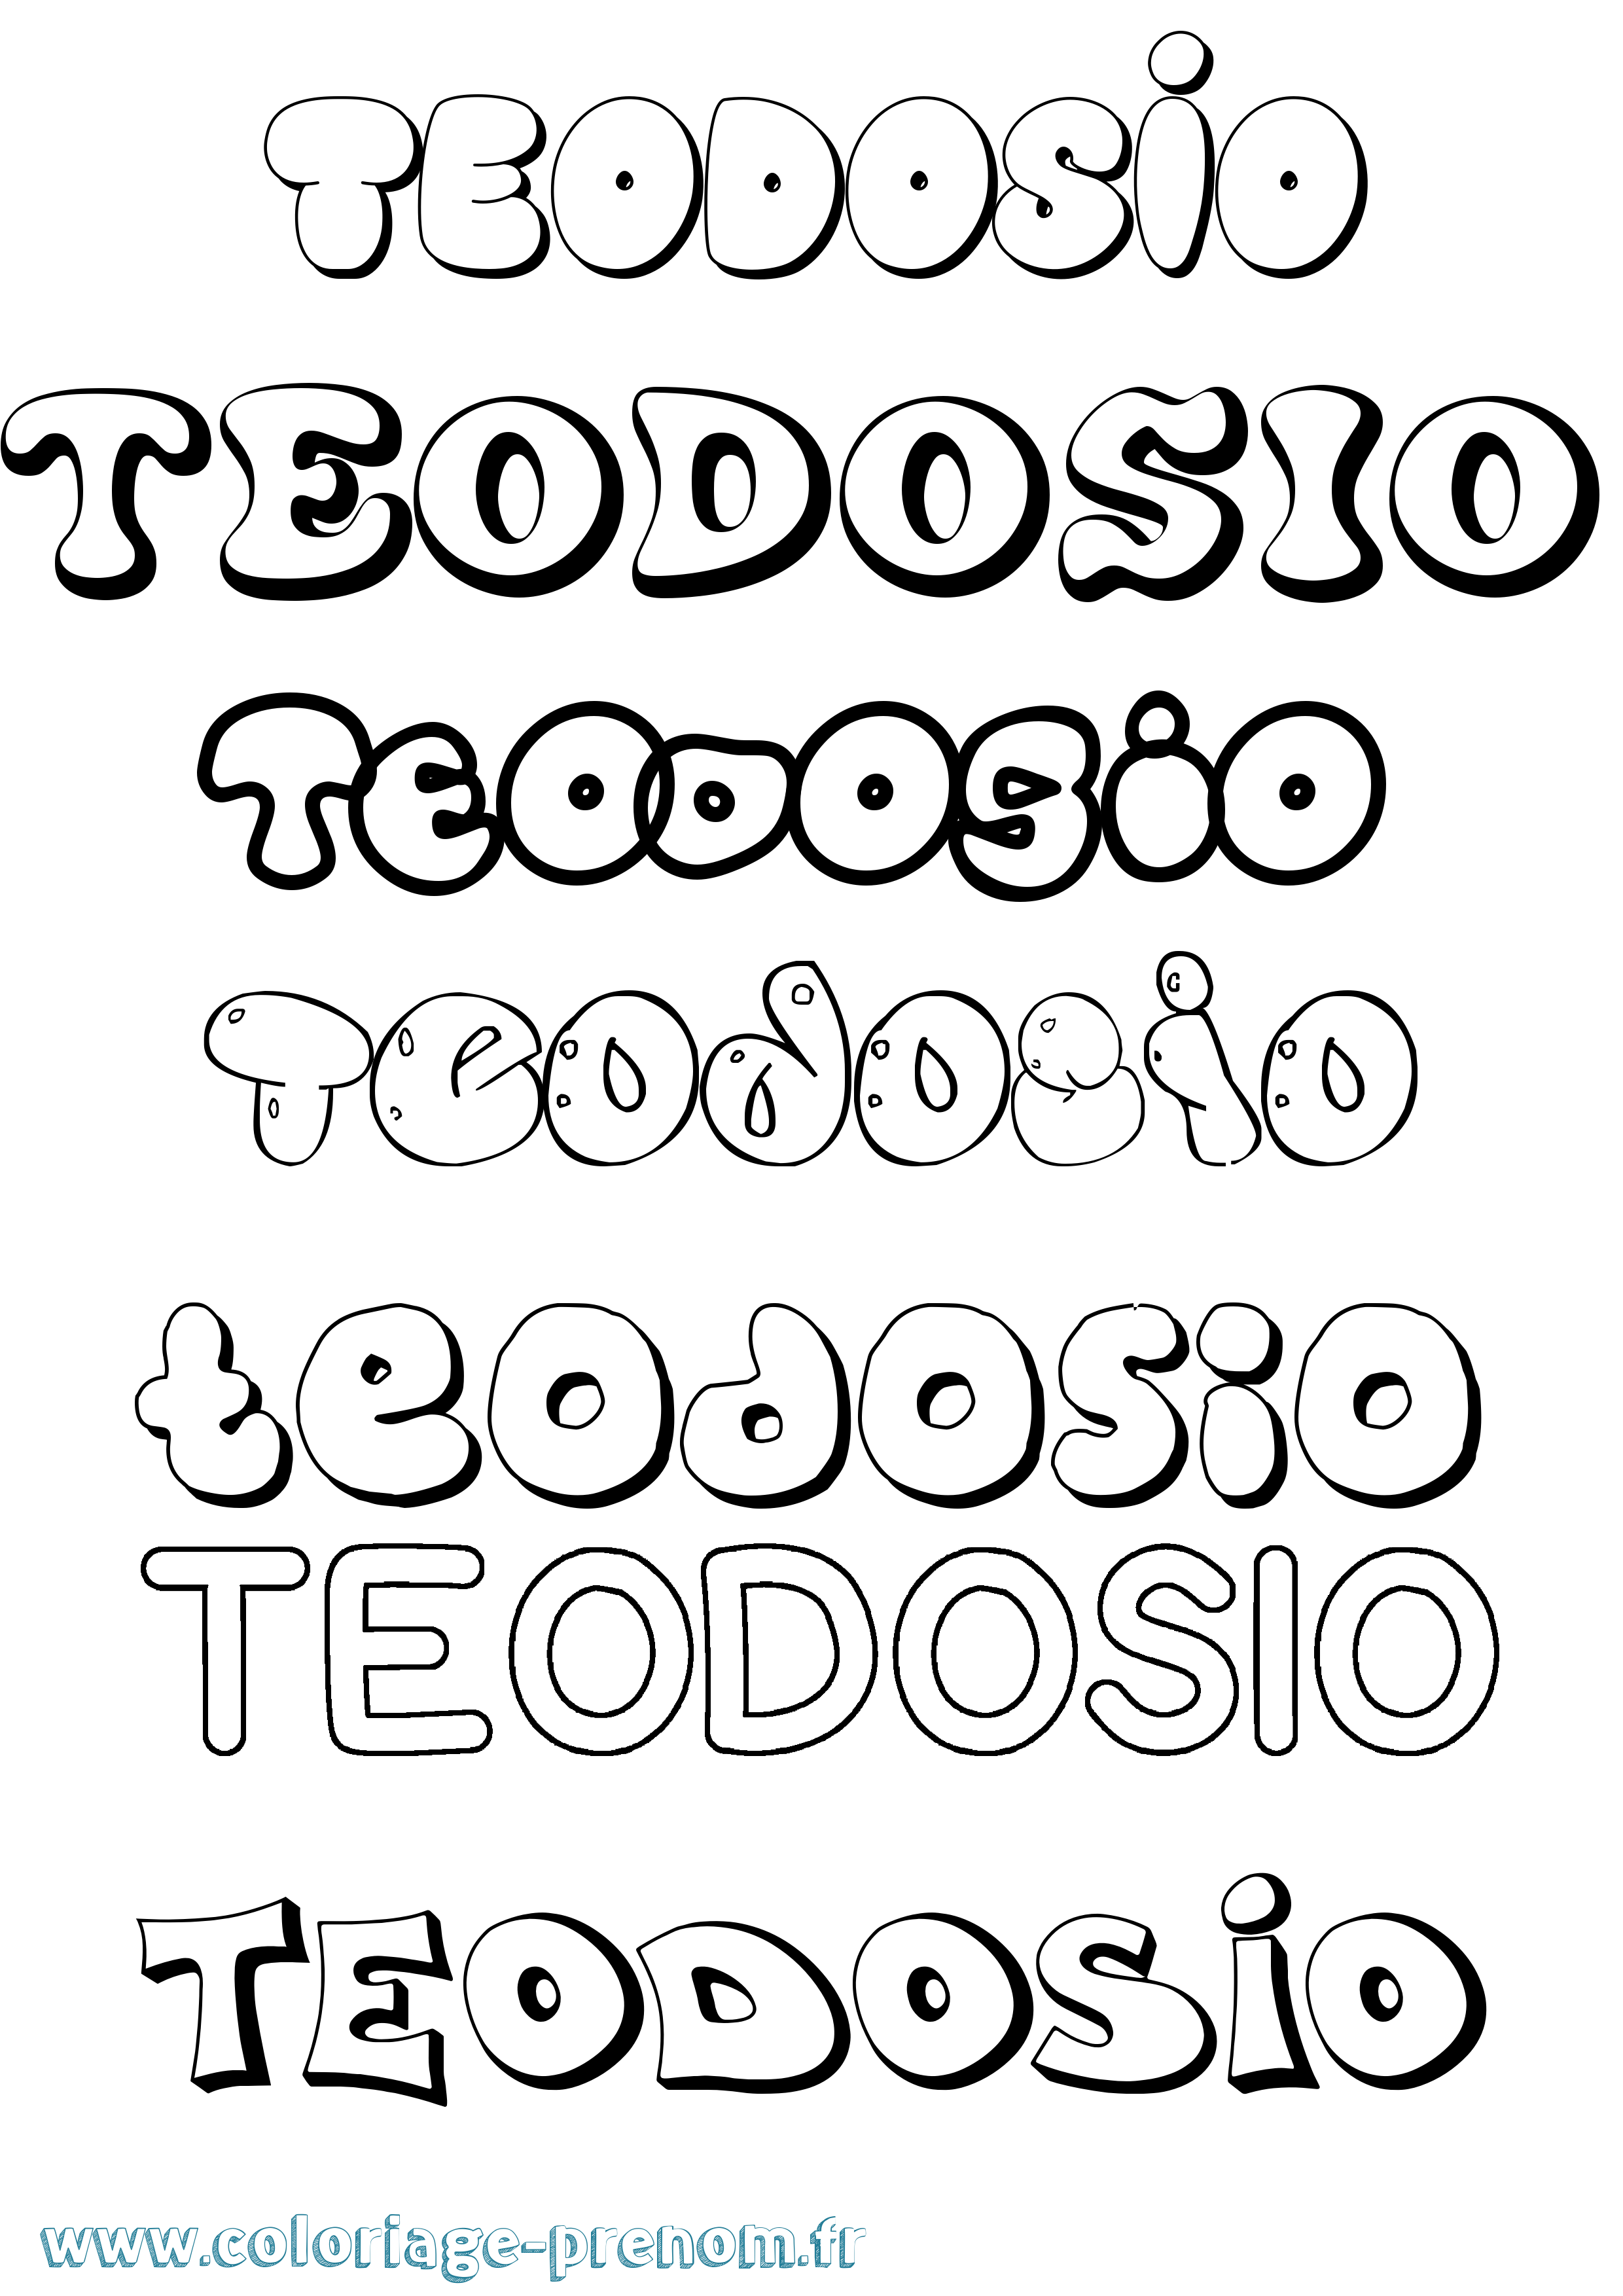 Coloriage prénom Teodosio Bubble